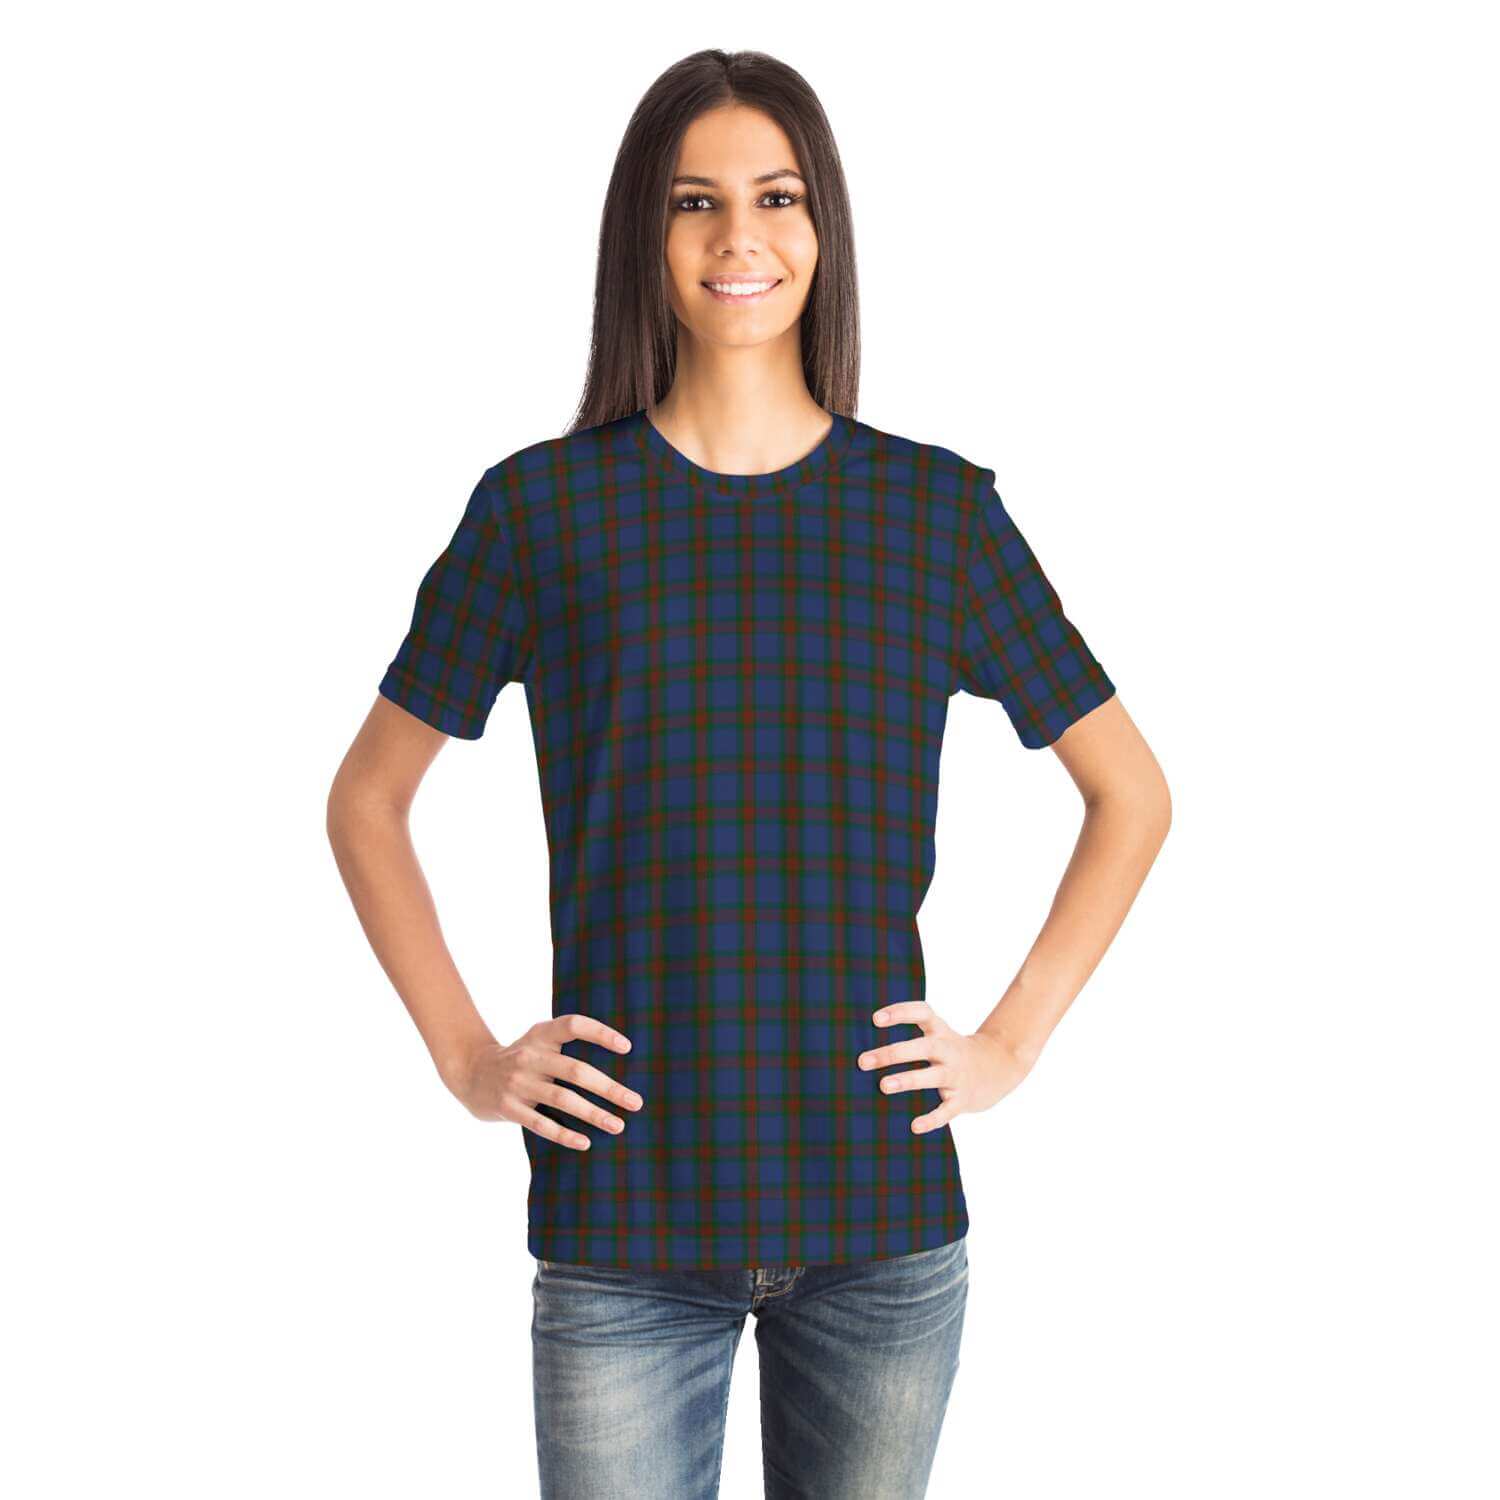 Wilson-Tartan-T-shirt-female-front1